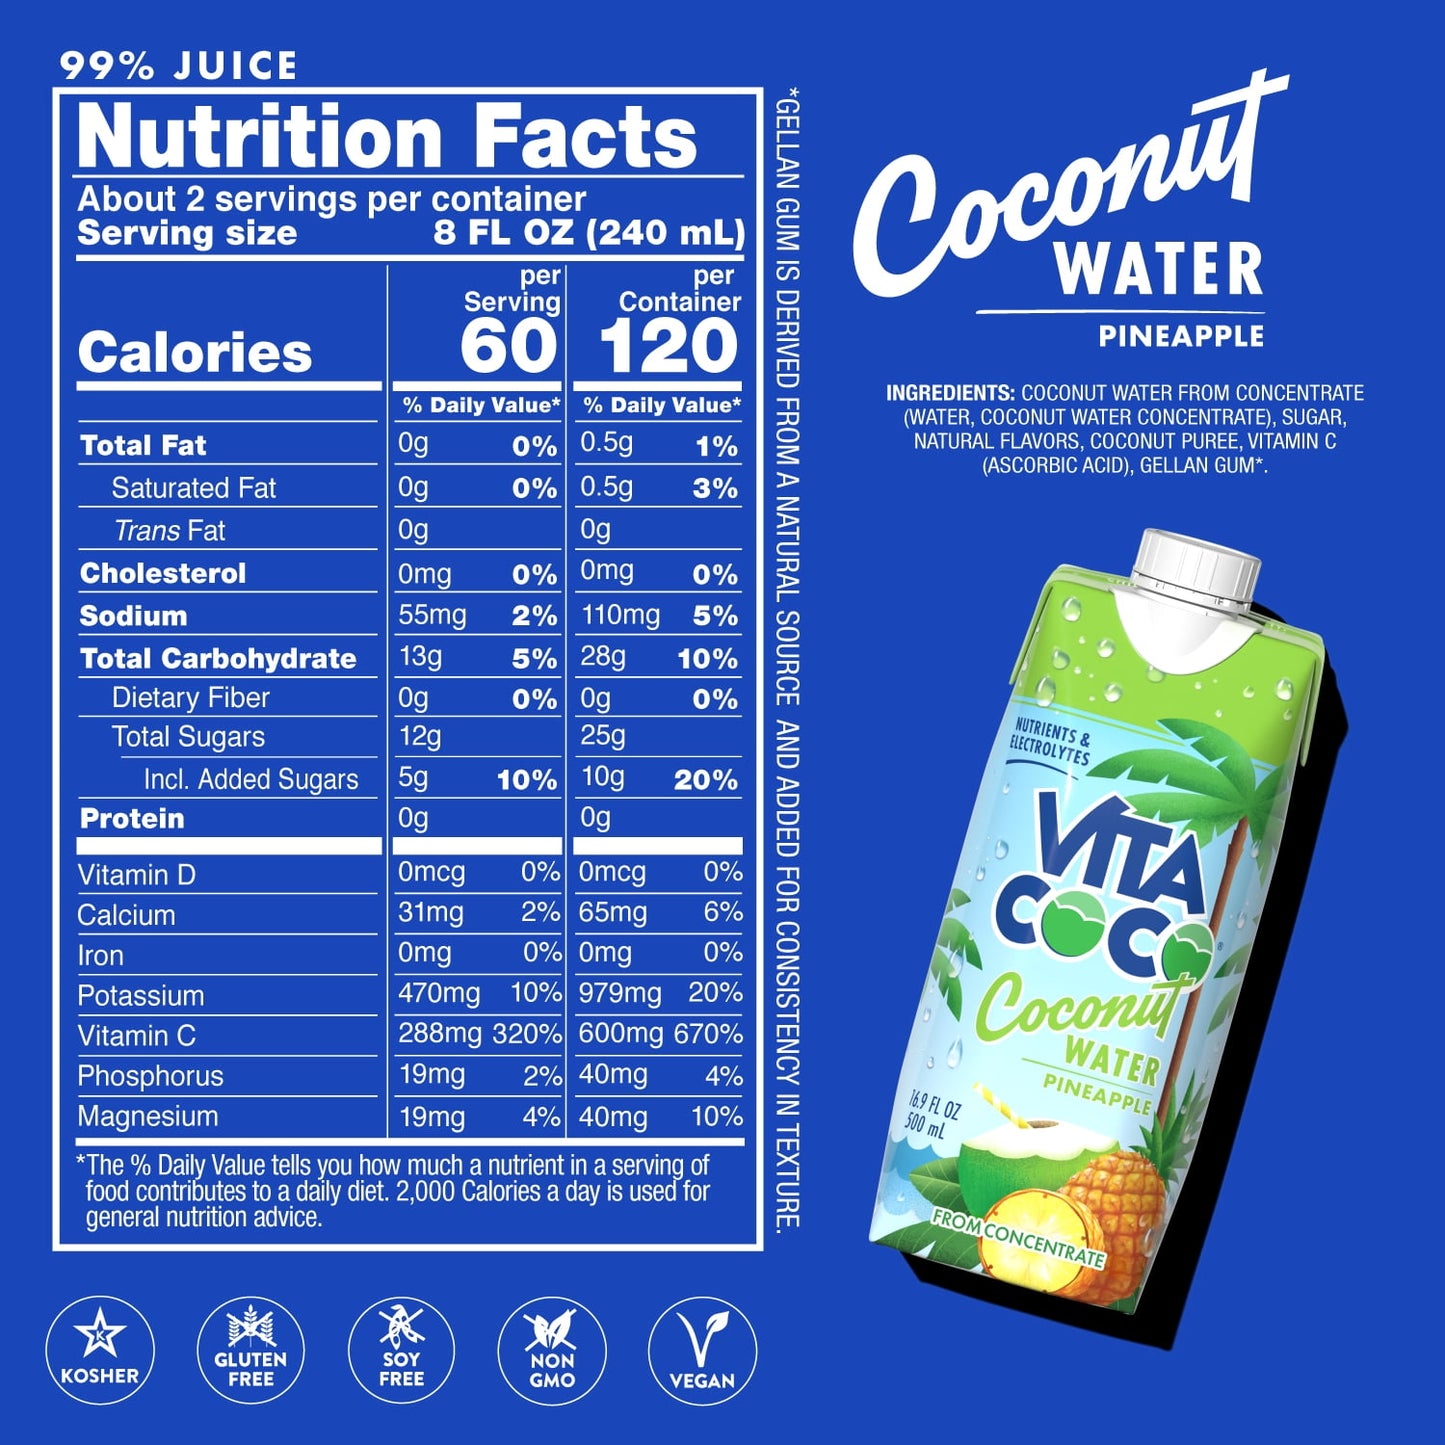 Vita Coco Coconut Water, Pineapple, 16.9 fl oz Tetra